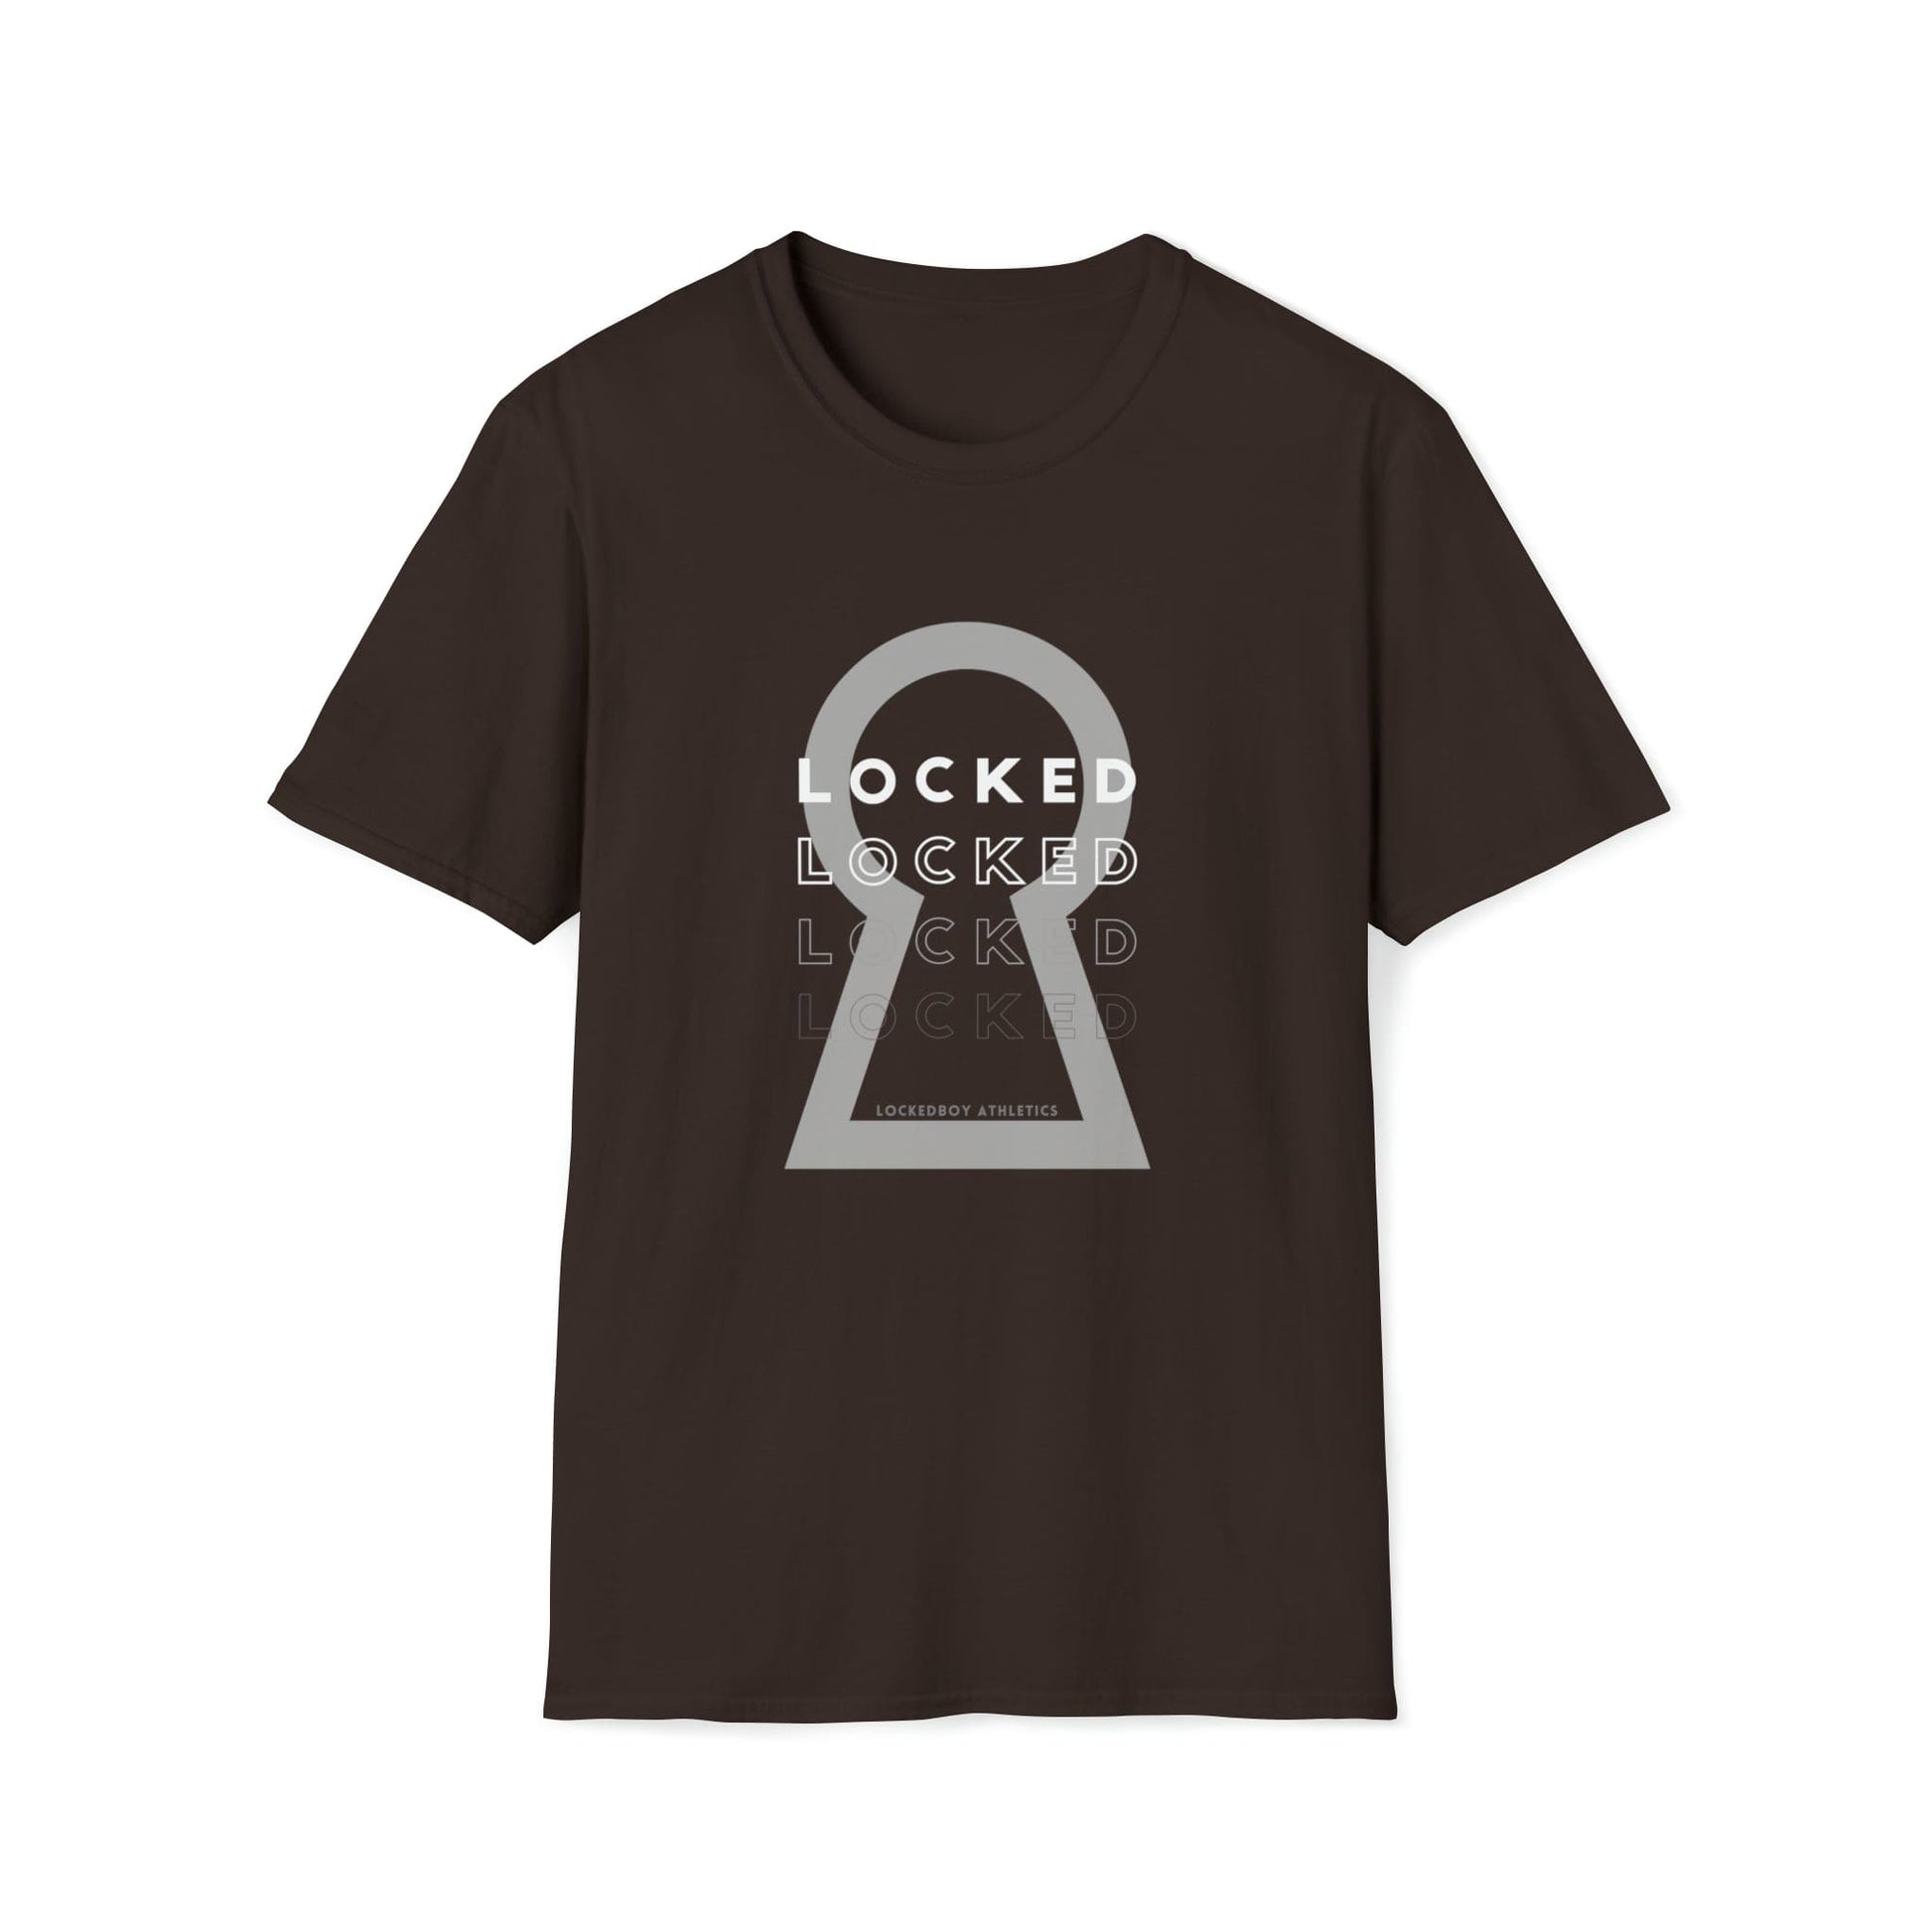 T-Shirt Dark Chocolate / S Lockedboy KeyHOLE Echo - Lockedboy Athletics Chastity Tshirt LEATHERDADDY BATOR